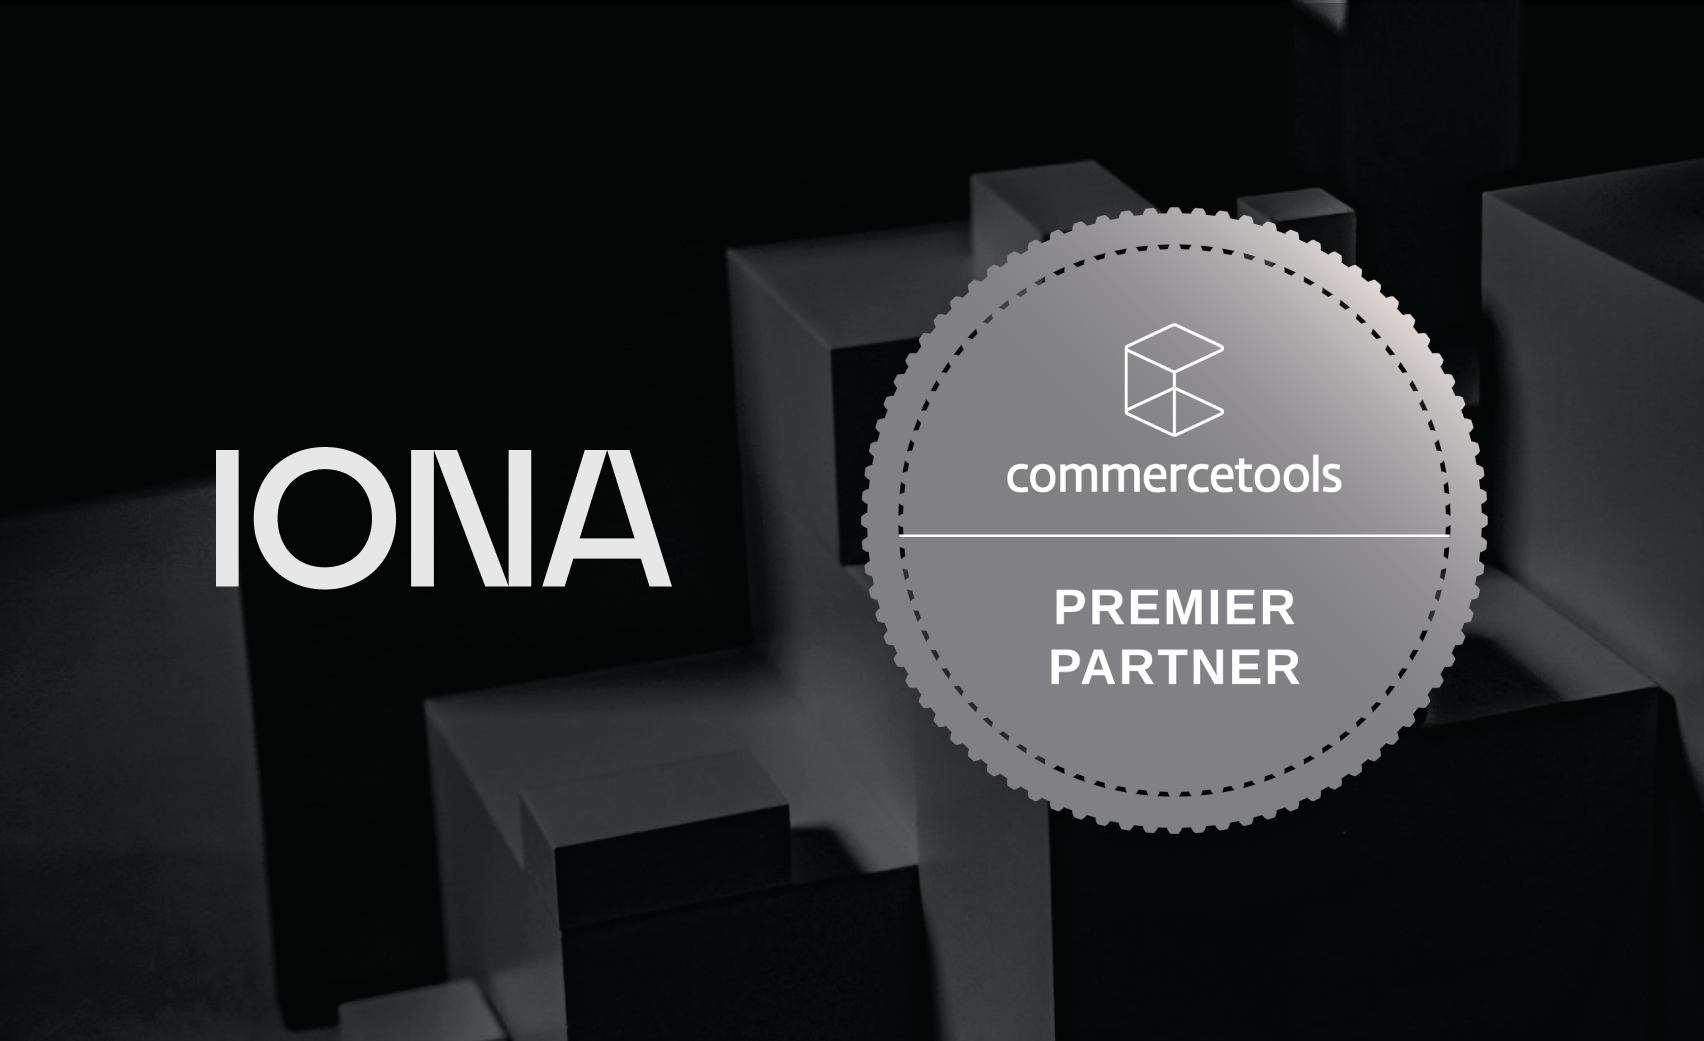 IONA becomes a commercetools Premier Partner